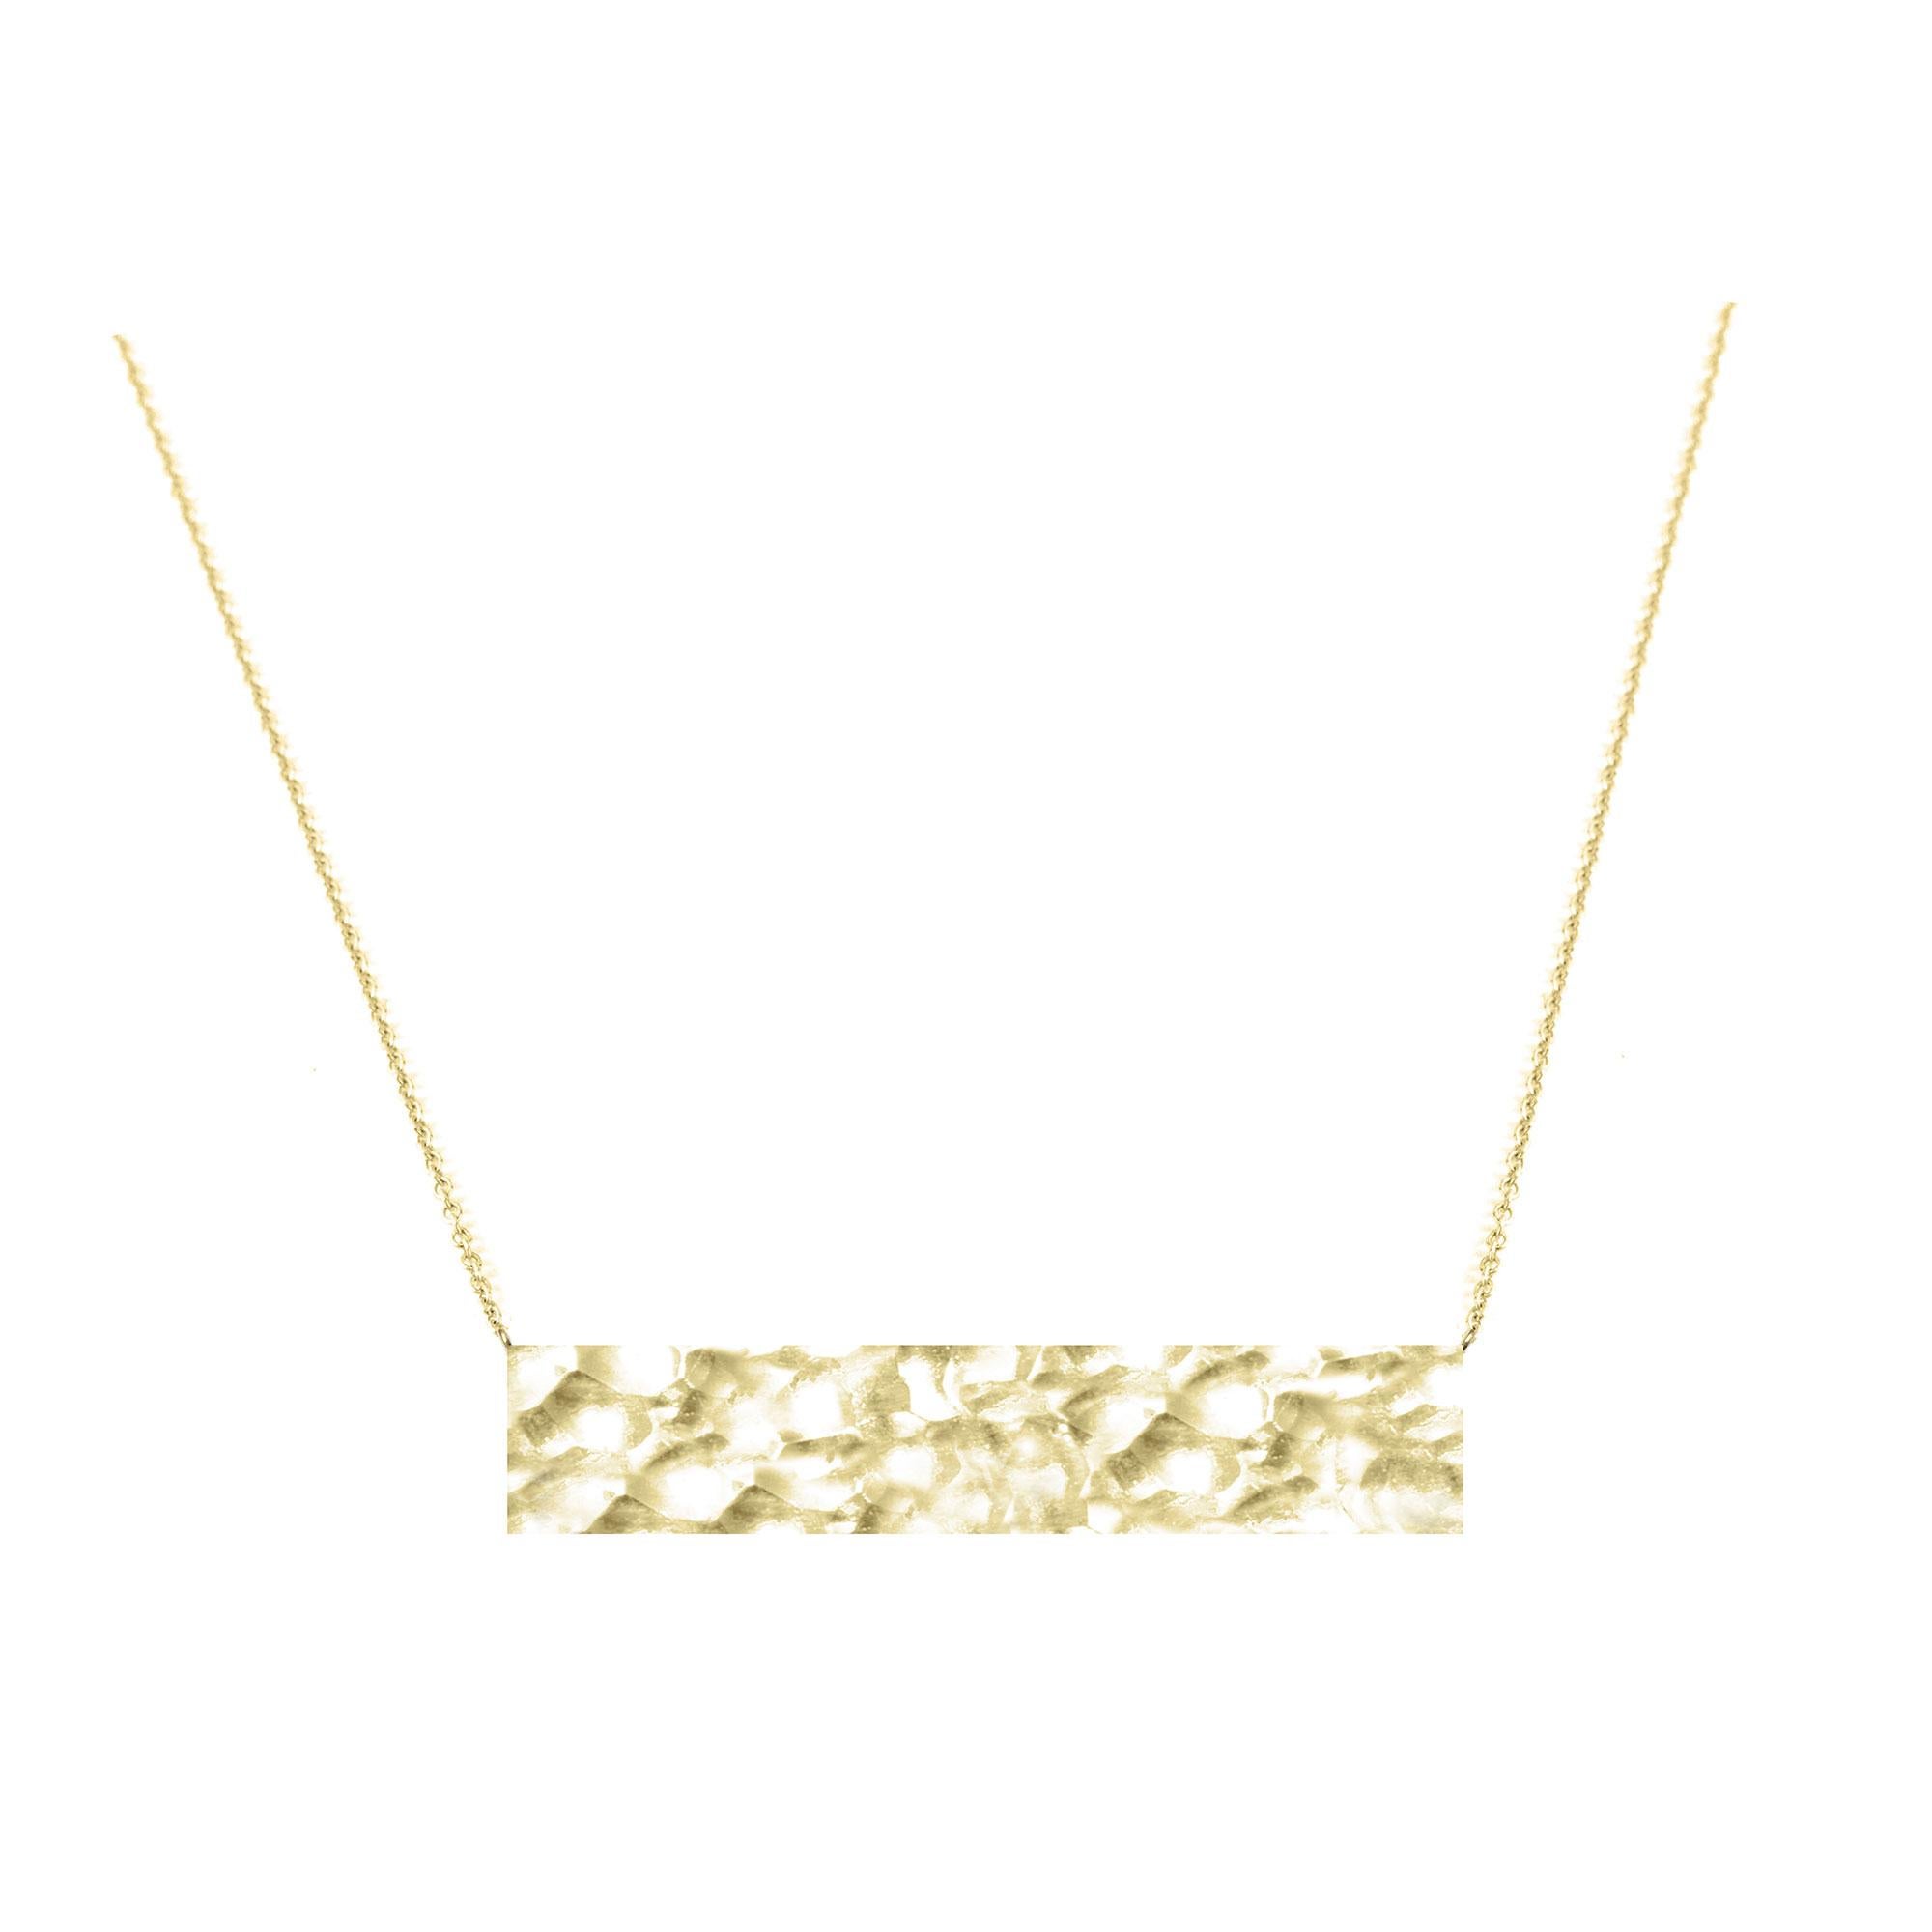 Necklace Information

Metal: 14K Gold
Length: 15-17''